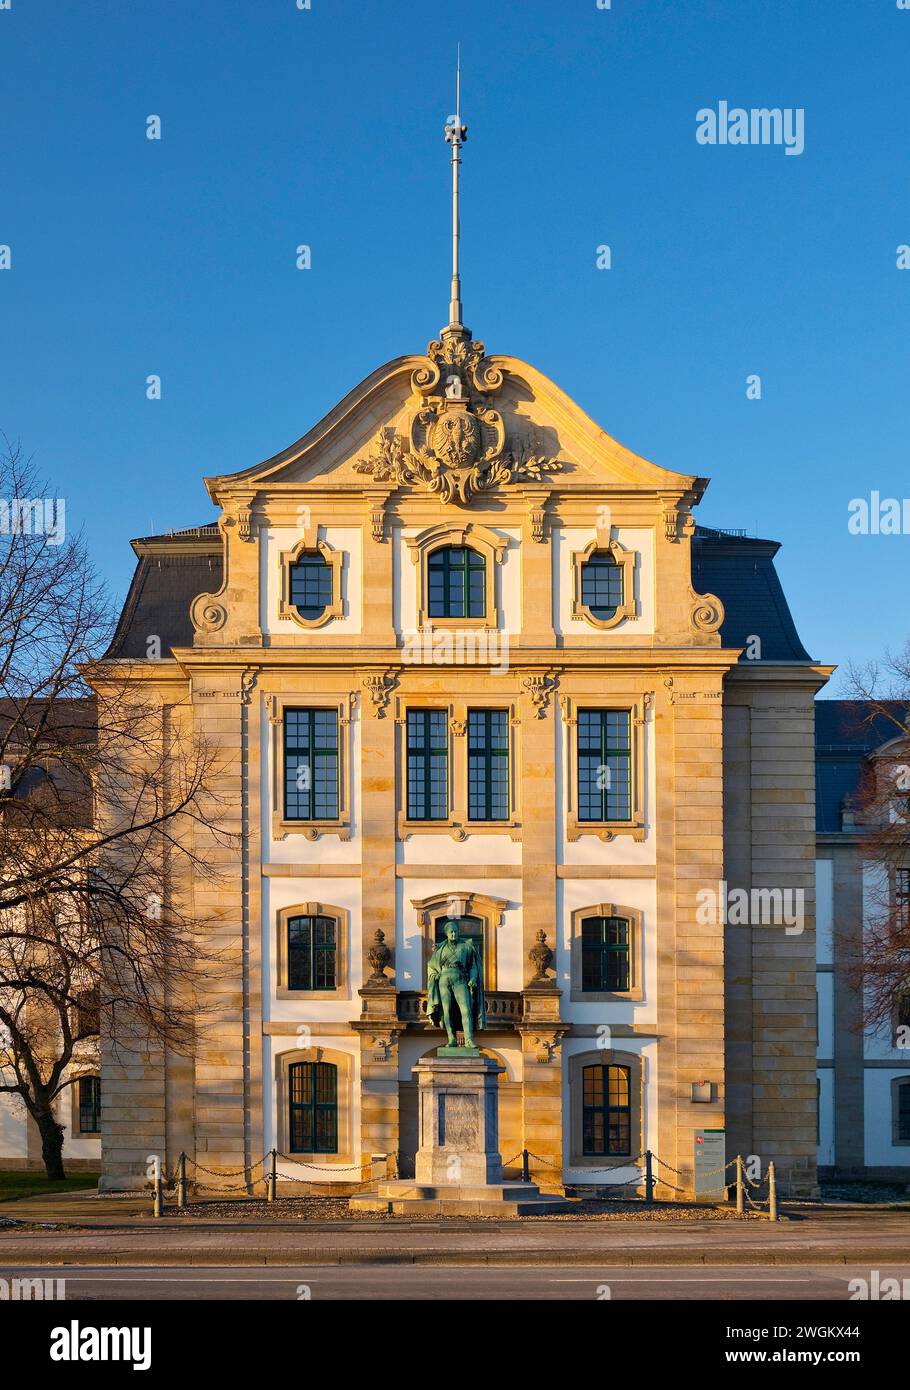 Archives d'État de basse-Saxe avec le Mémorial général Graf von Alten, Allemagne, basse-Saxe, Hanovre Banque D'Images